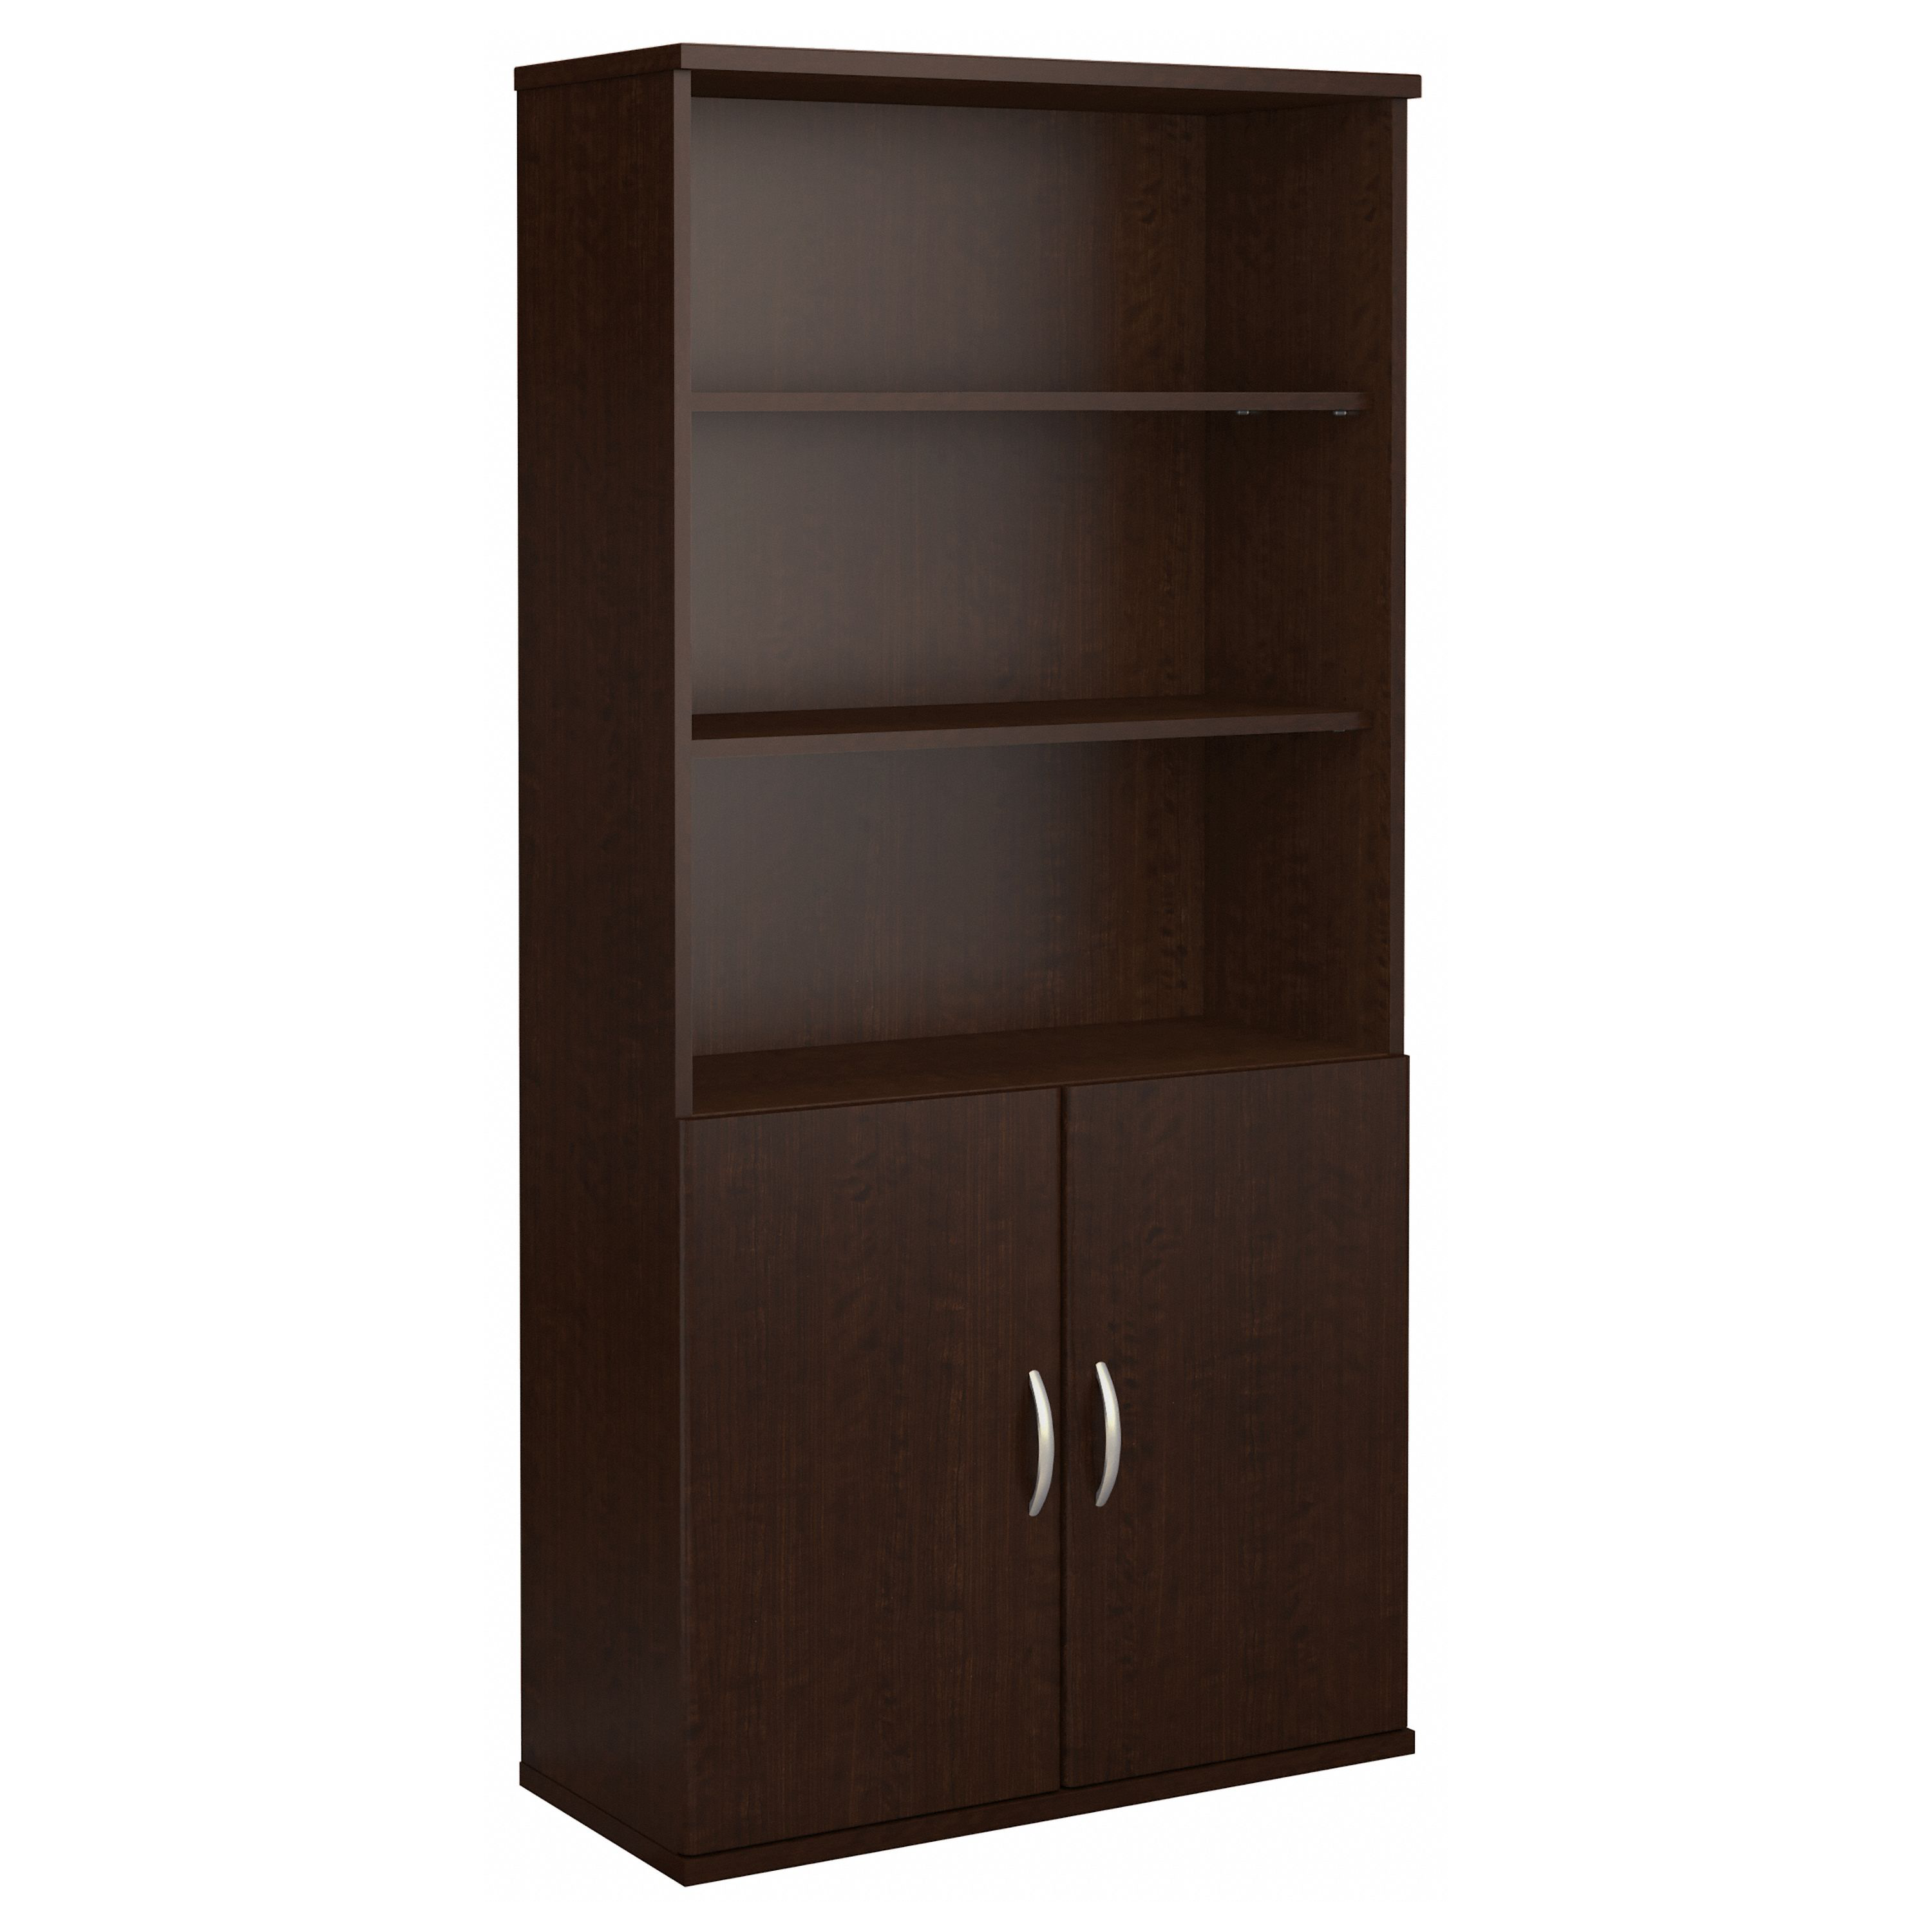 Shop Bush Business Furniture Series C 36W 5 Shelf Bookcase with Doors 02 SRC103MR #color_mocha cherry